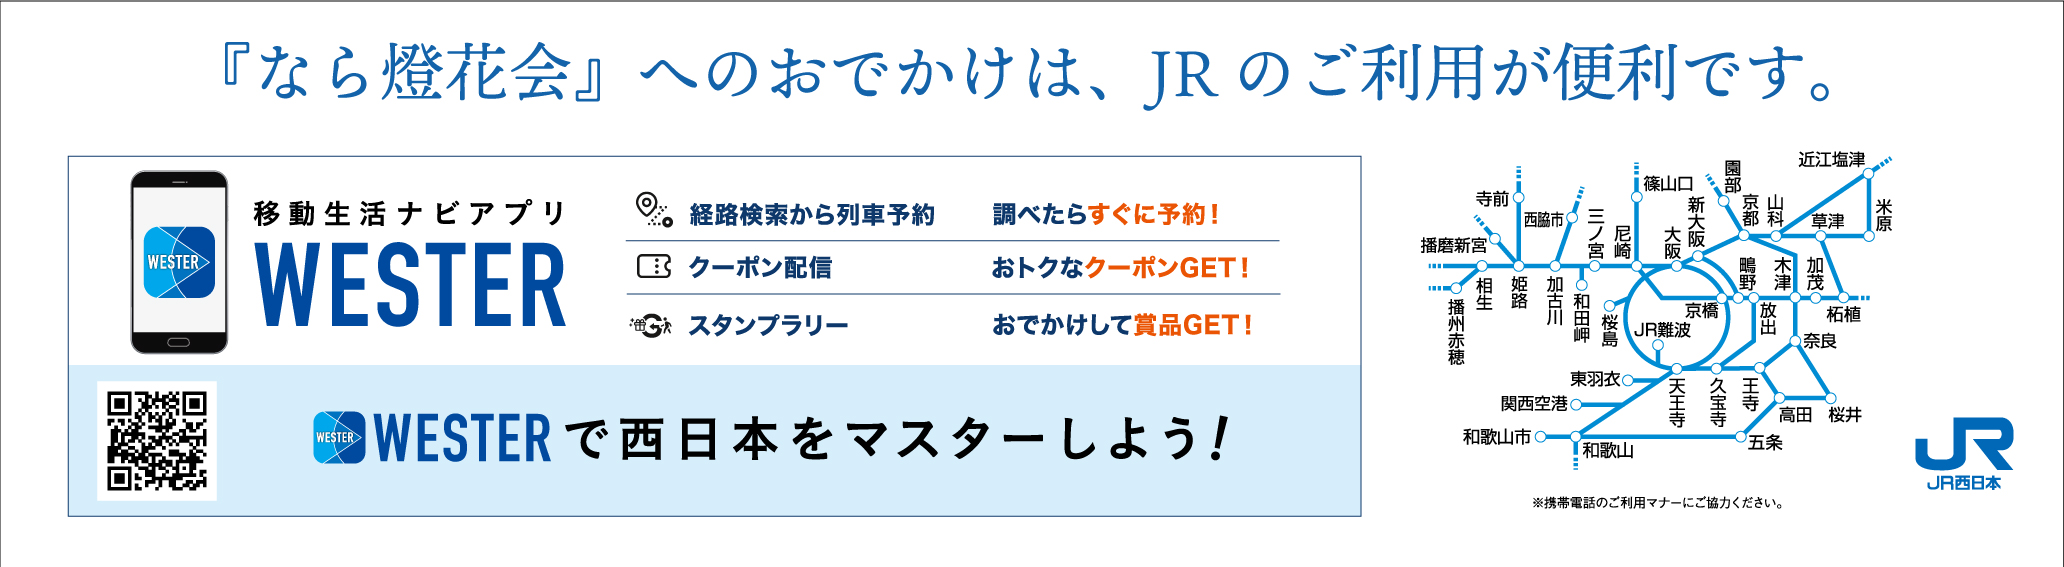 JR西日本:JRおでかけネット 移動生活ナビアプリ「WESTER」